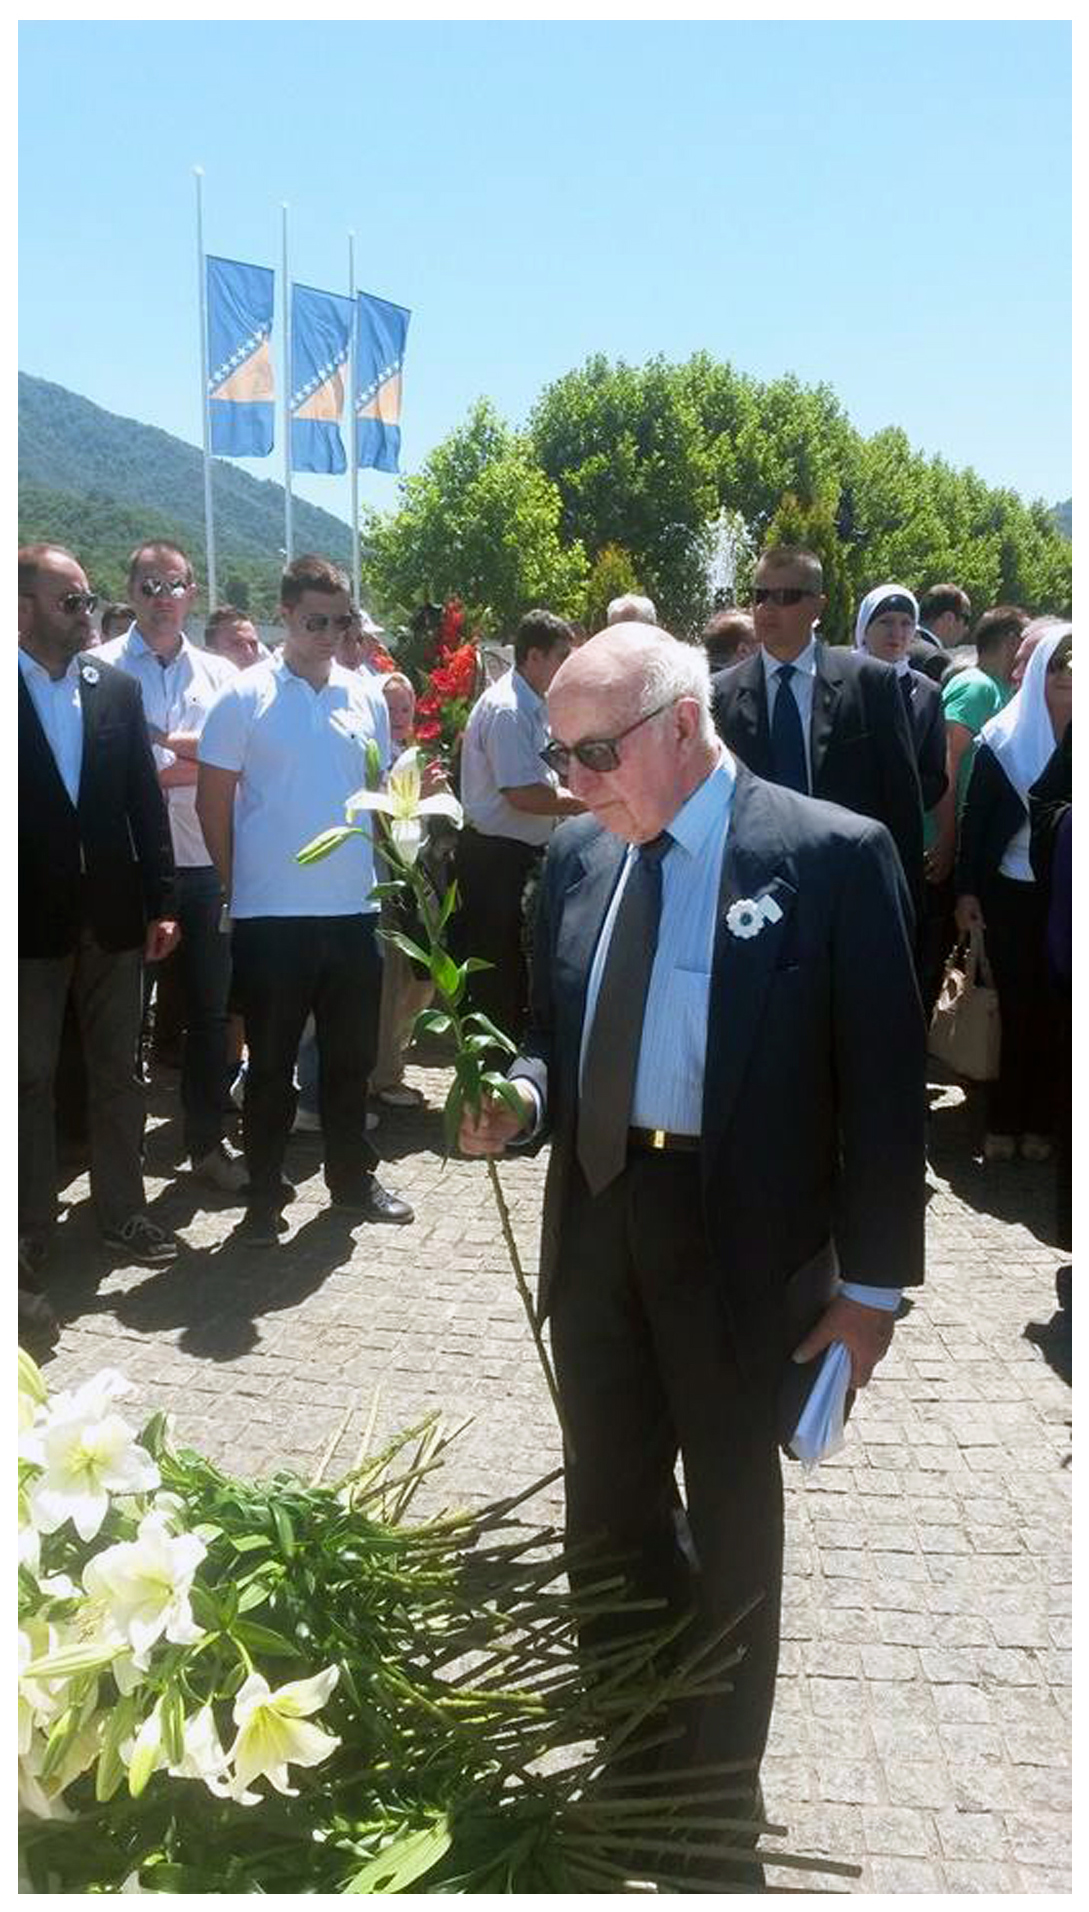 Srebrenica-Poto?ari Memorial Center, 11 July 2016, © UN ICTY